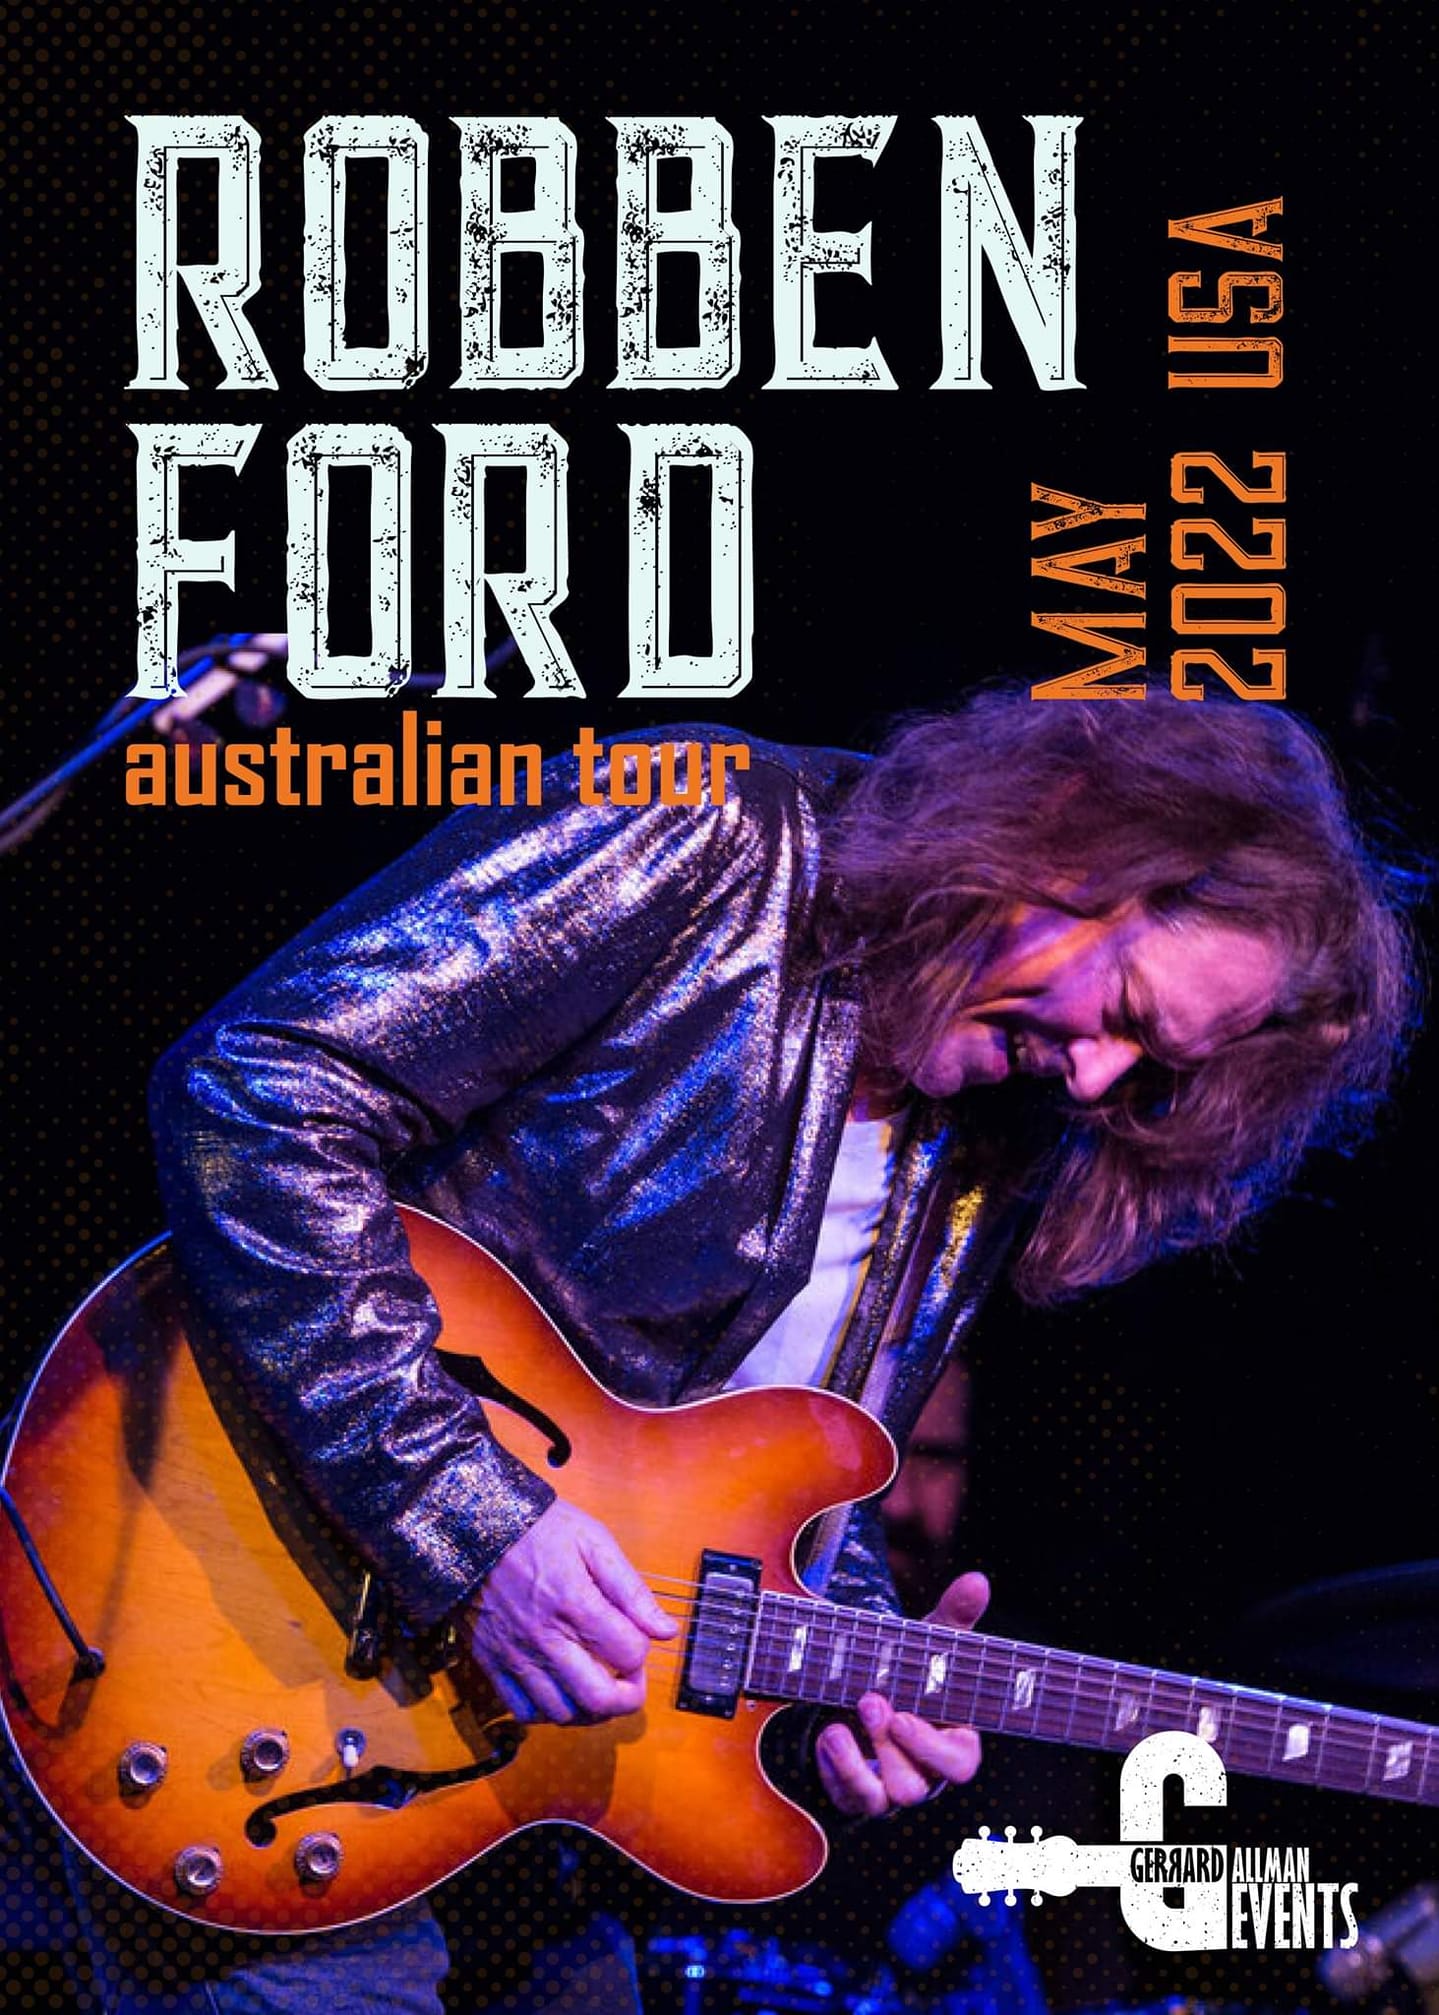 robben ford tour schedule